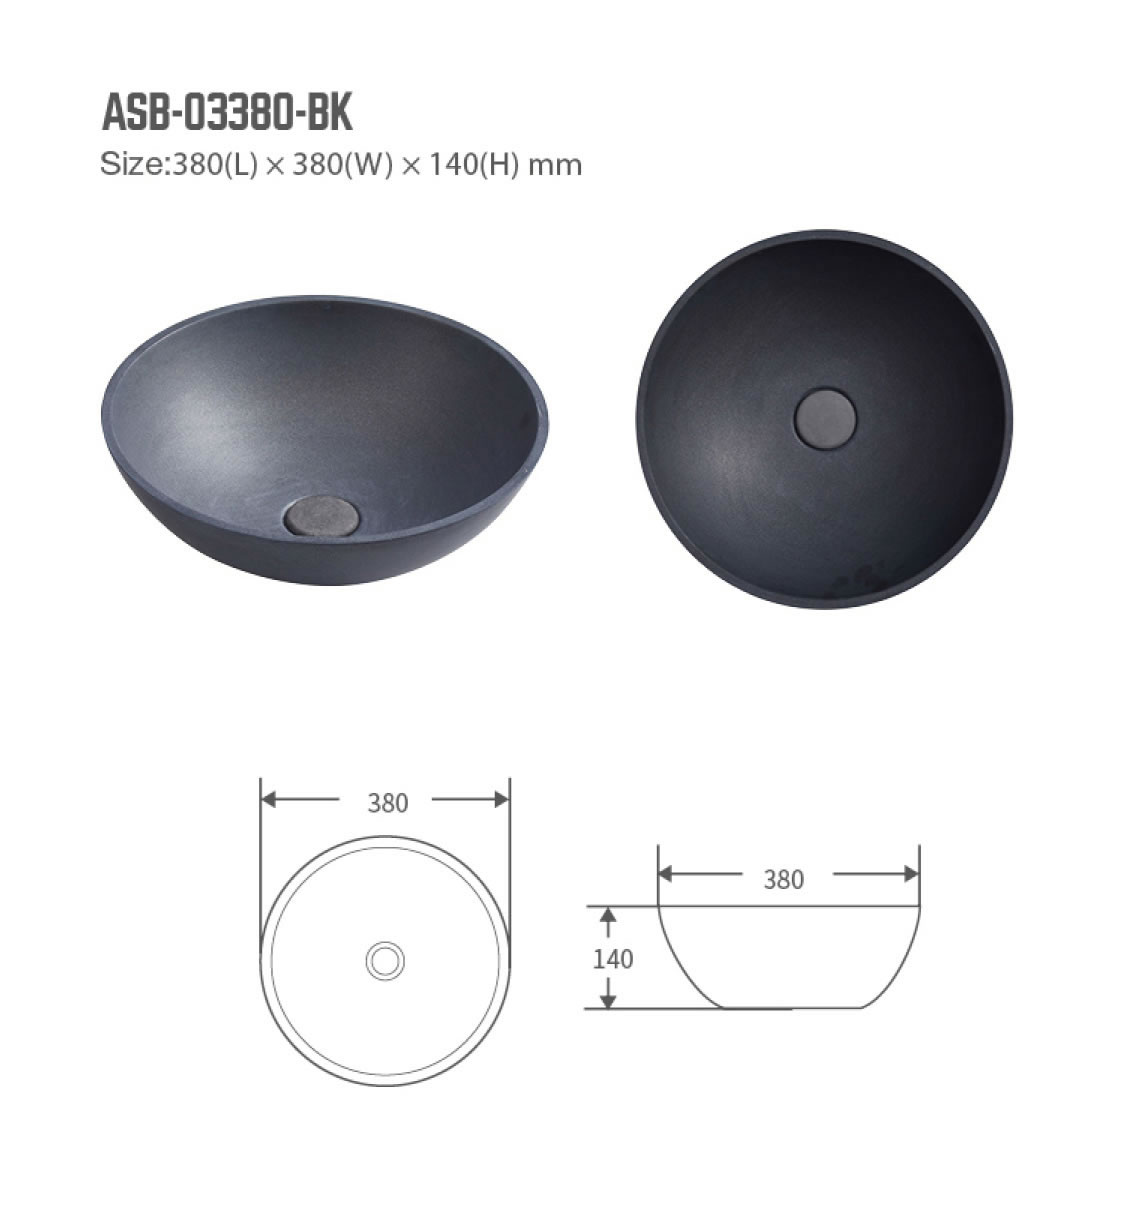 ASB-03380-BK